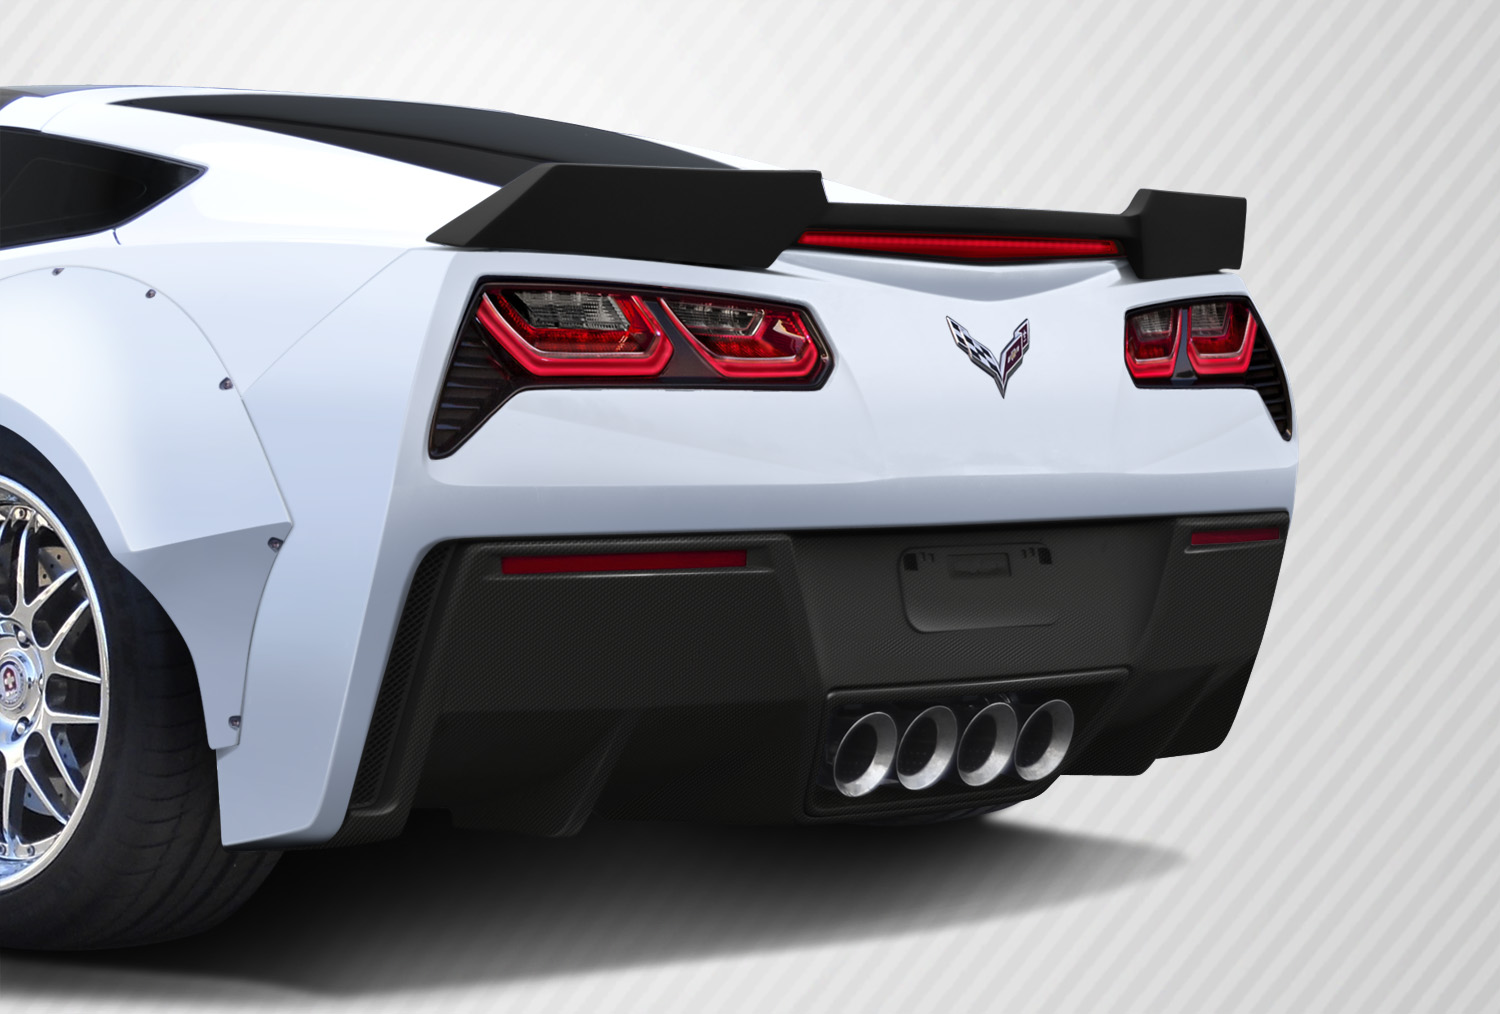 2016 Chevrolet Corvette ALL - Carbon Fiber Fibre Body Kit Bodykit - Chevrolet Corvette C7 Carbon Creations Apex Body Kit - 7 Piece - Includes Carbon C